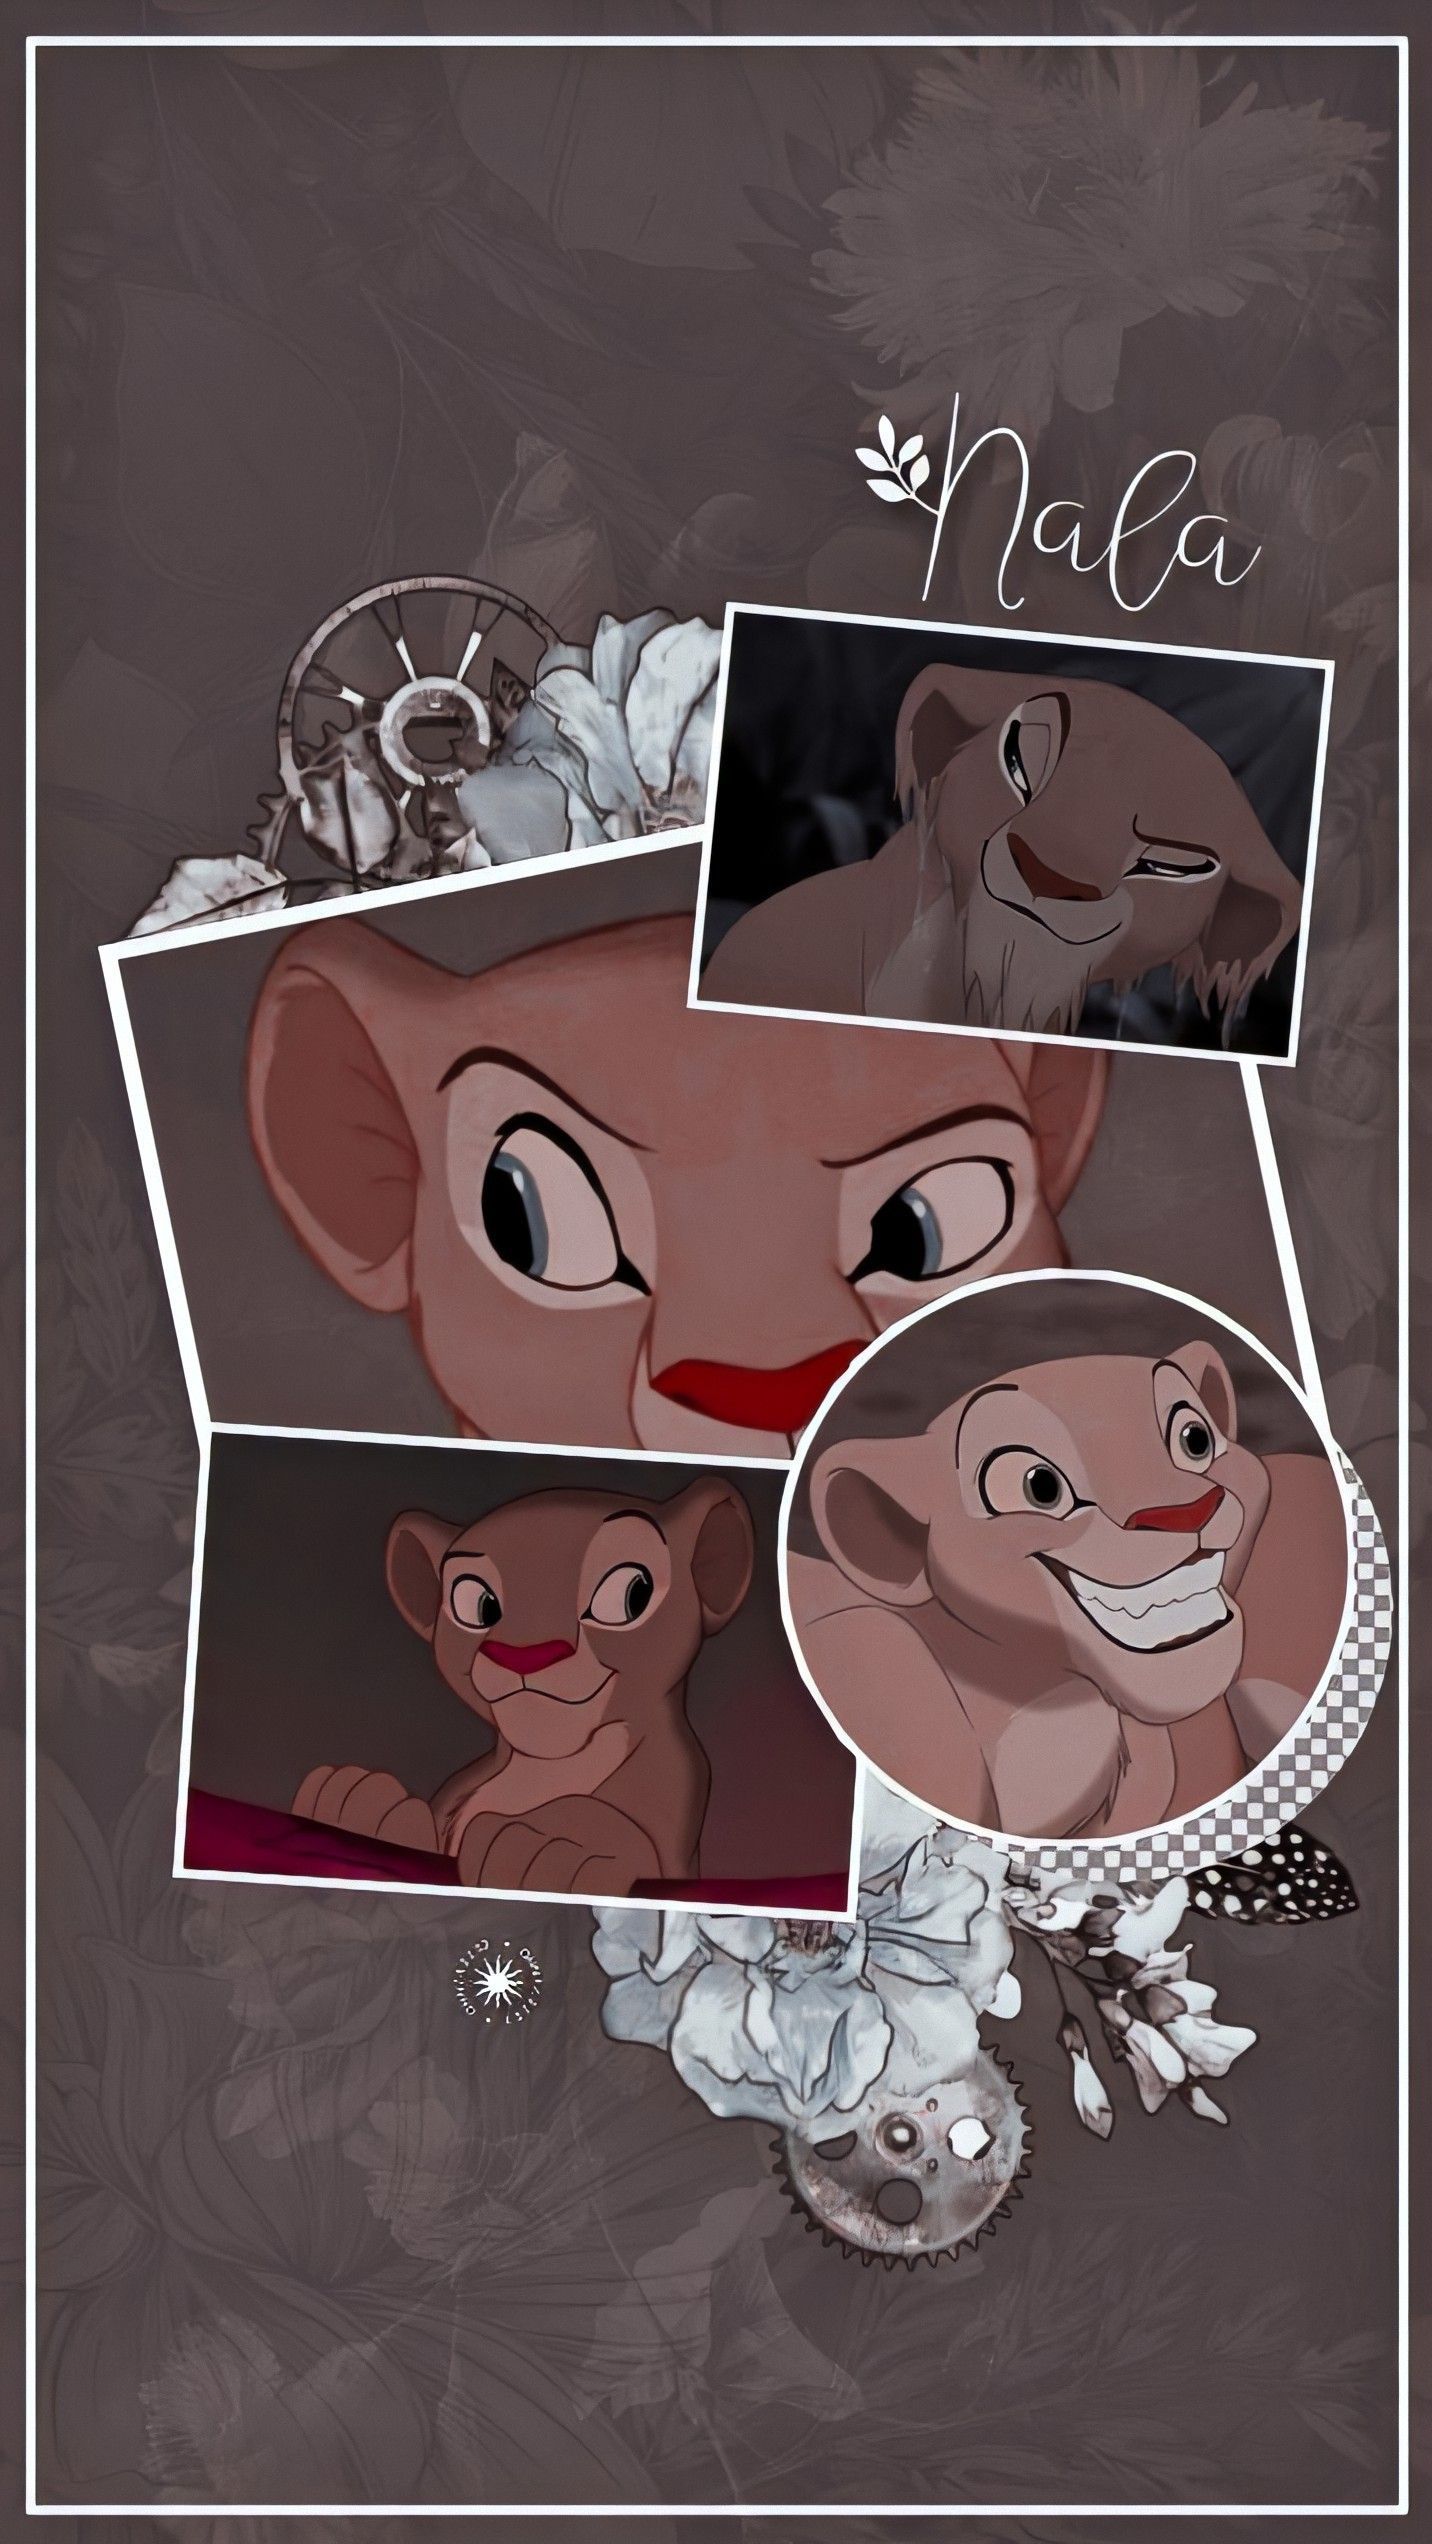 Nala edit. Lion king picture, Lion king drawings, Disney collage